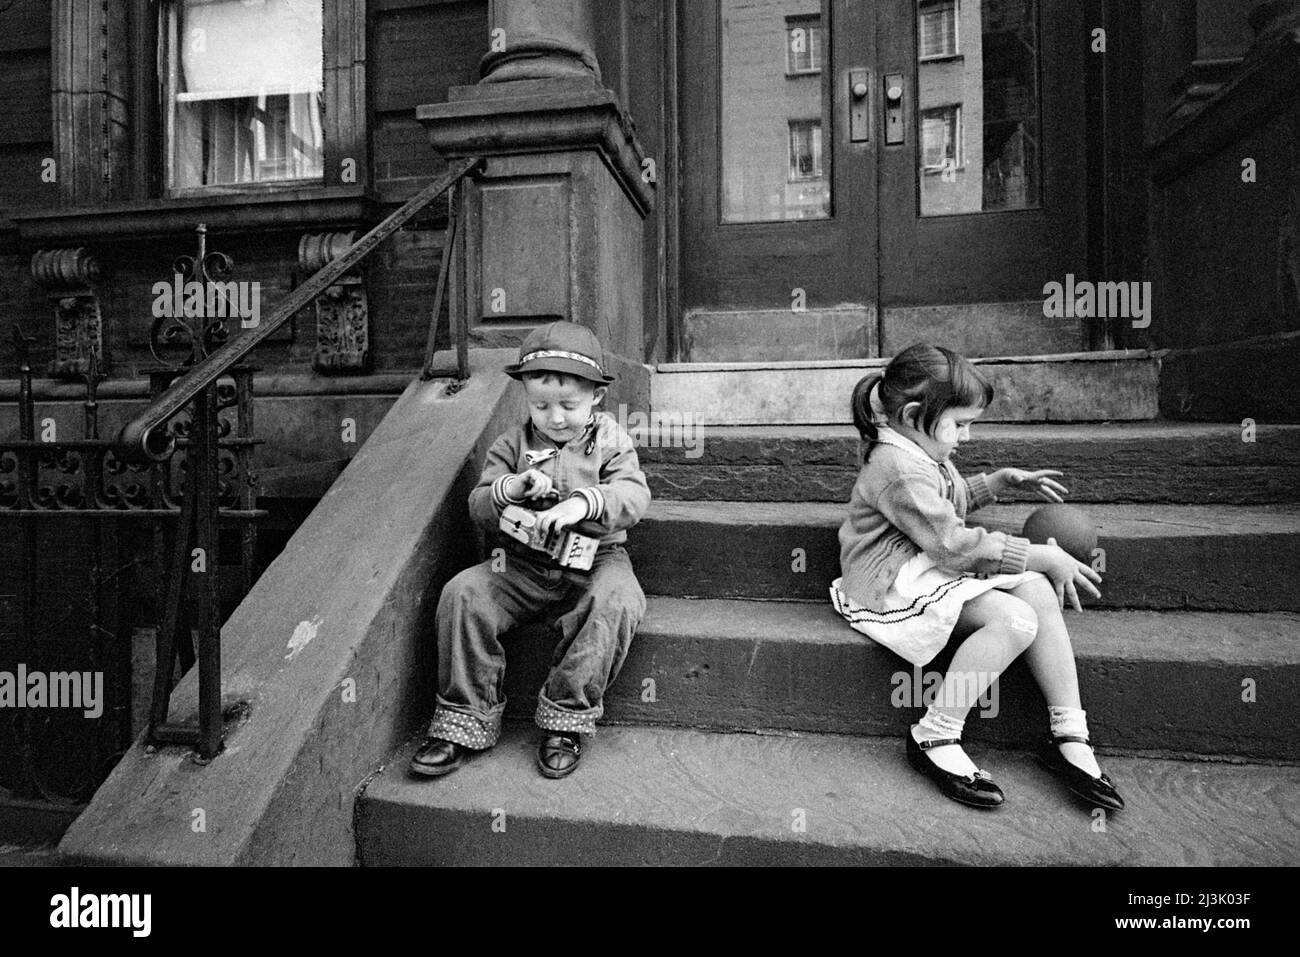 Ragazzo che gioca con il camion giocattolo, ragazza che gioca con la palla sui gradini anteriori dell'edificio dell'appartamento, New York City, New York, USA, Angelo Rizzuto, Anthony Angel Collection, maggio 1961 Foto Stock